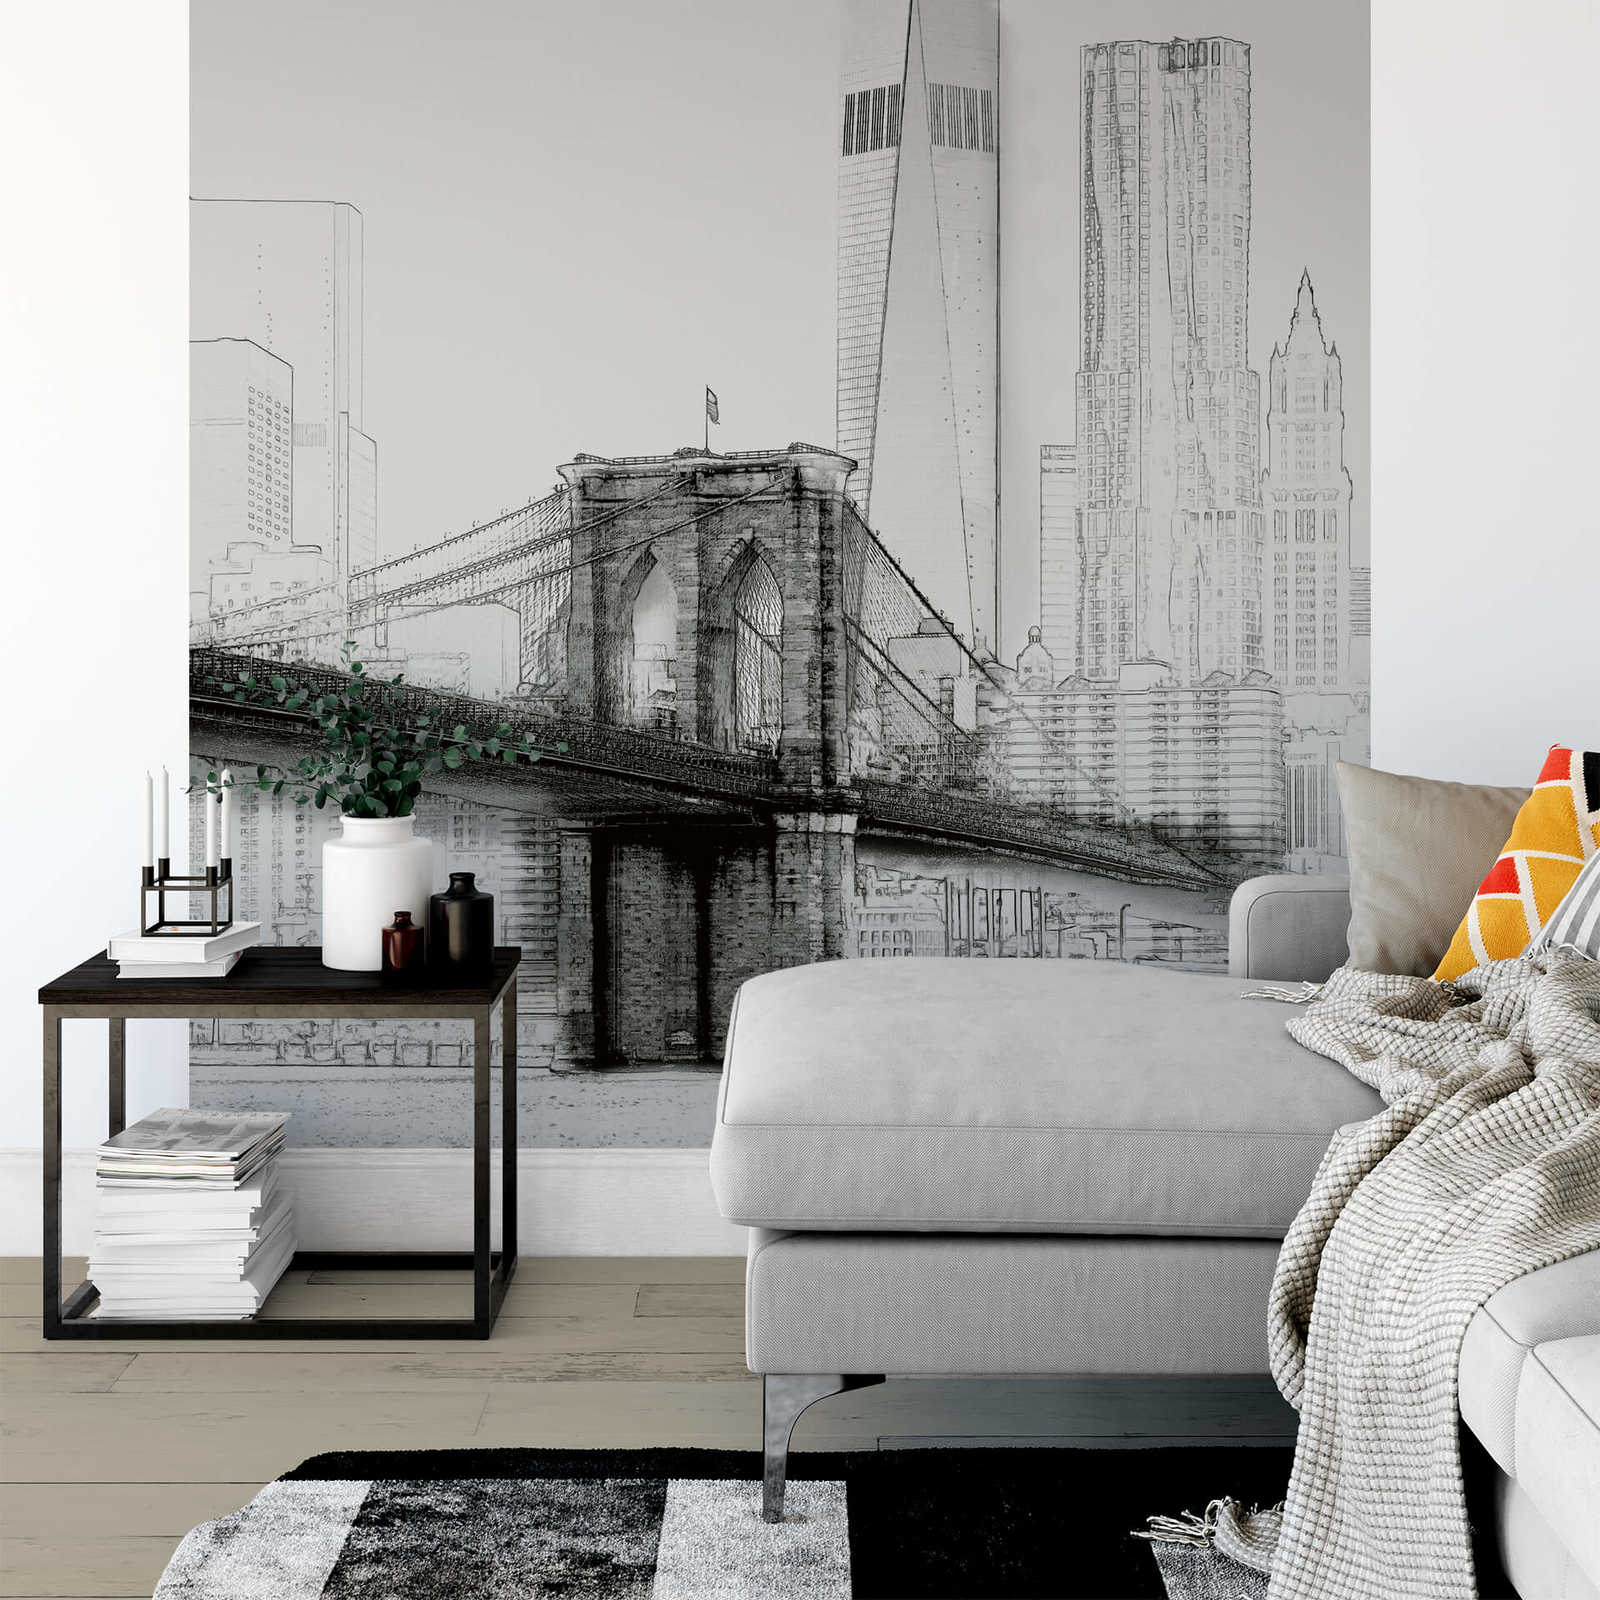             Papel pintado fotográfico en blanco y negro del horizonte de Nueva York, formato vertical
        